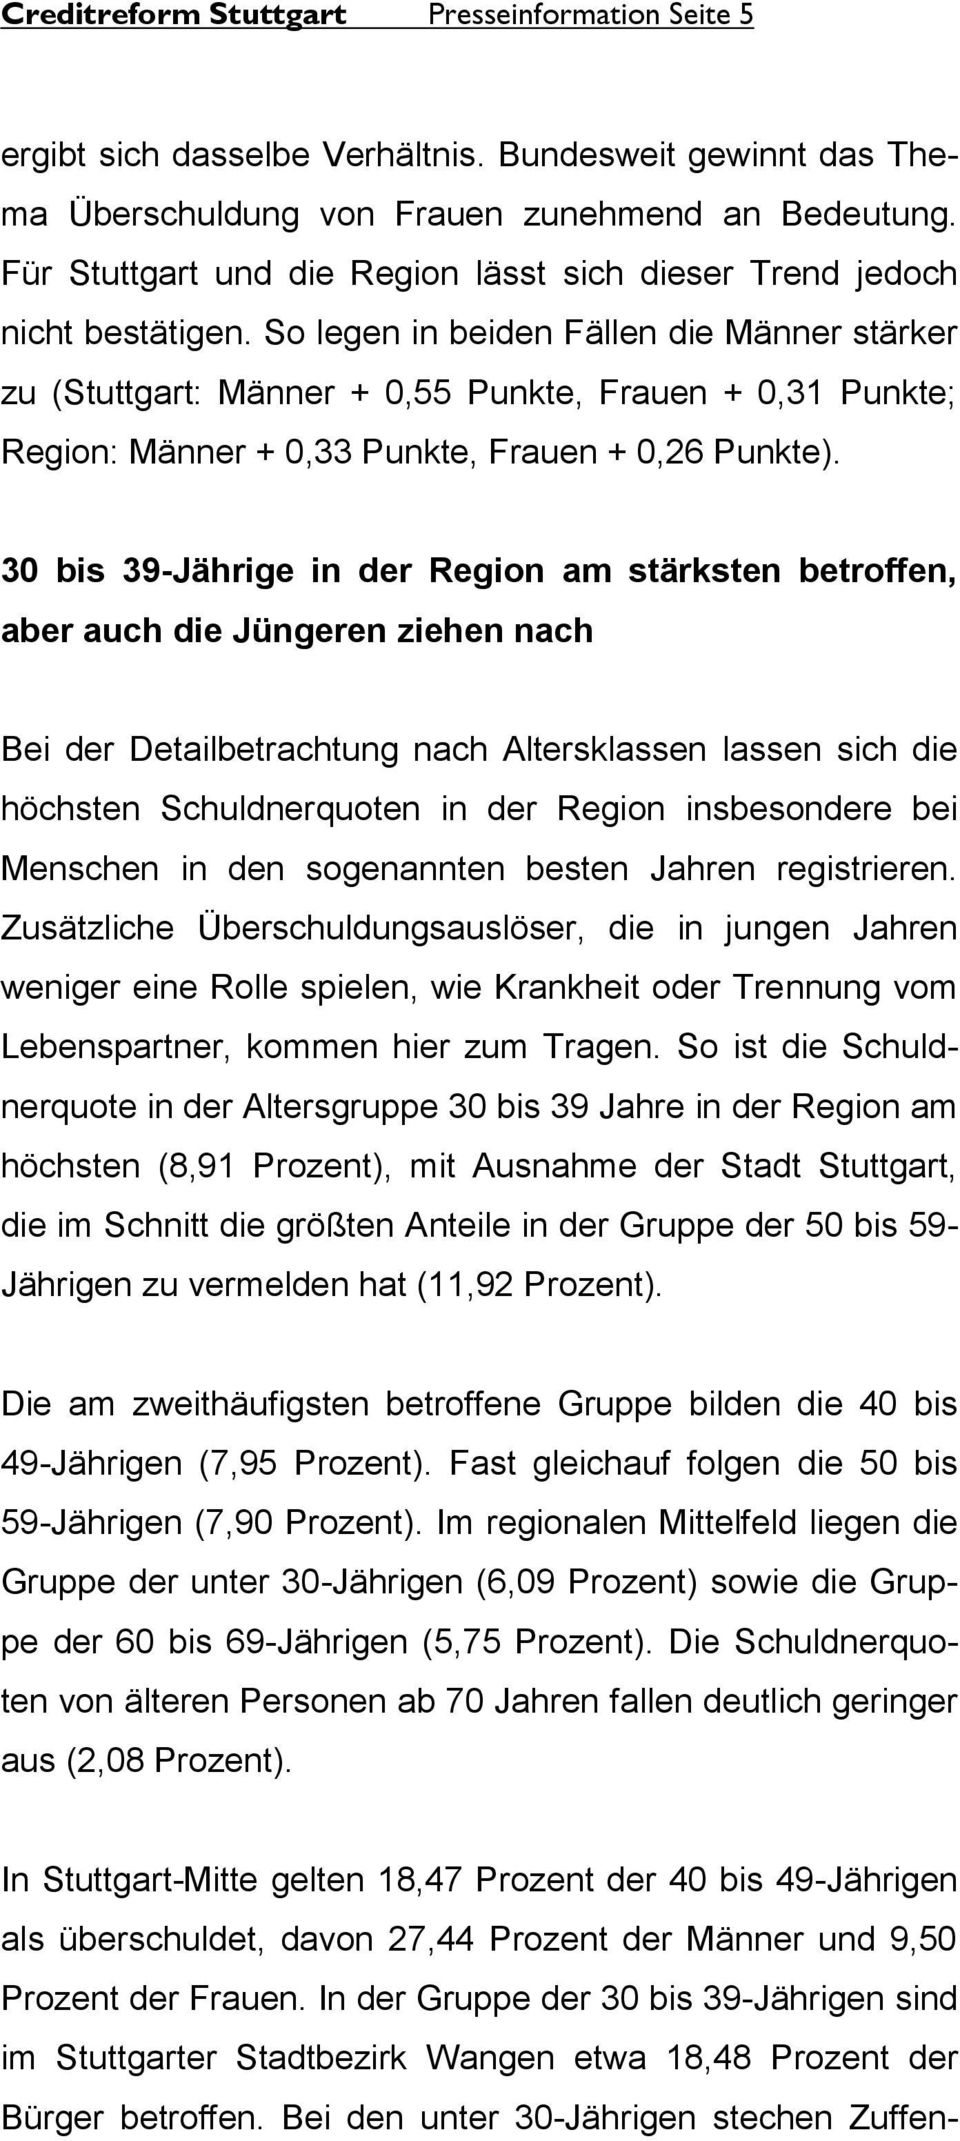 So legen in beiden Fällen die Männer stärker zu (Stuttgart: Männer + 0,55 Punkte, Frauen + 0,31 Punkte; Region: Männer + 0,33 Punkte, Frauen + 0,26 Punkte).